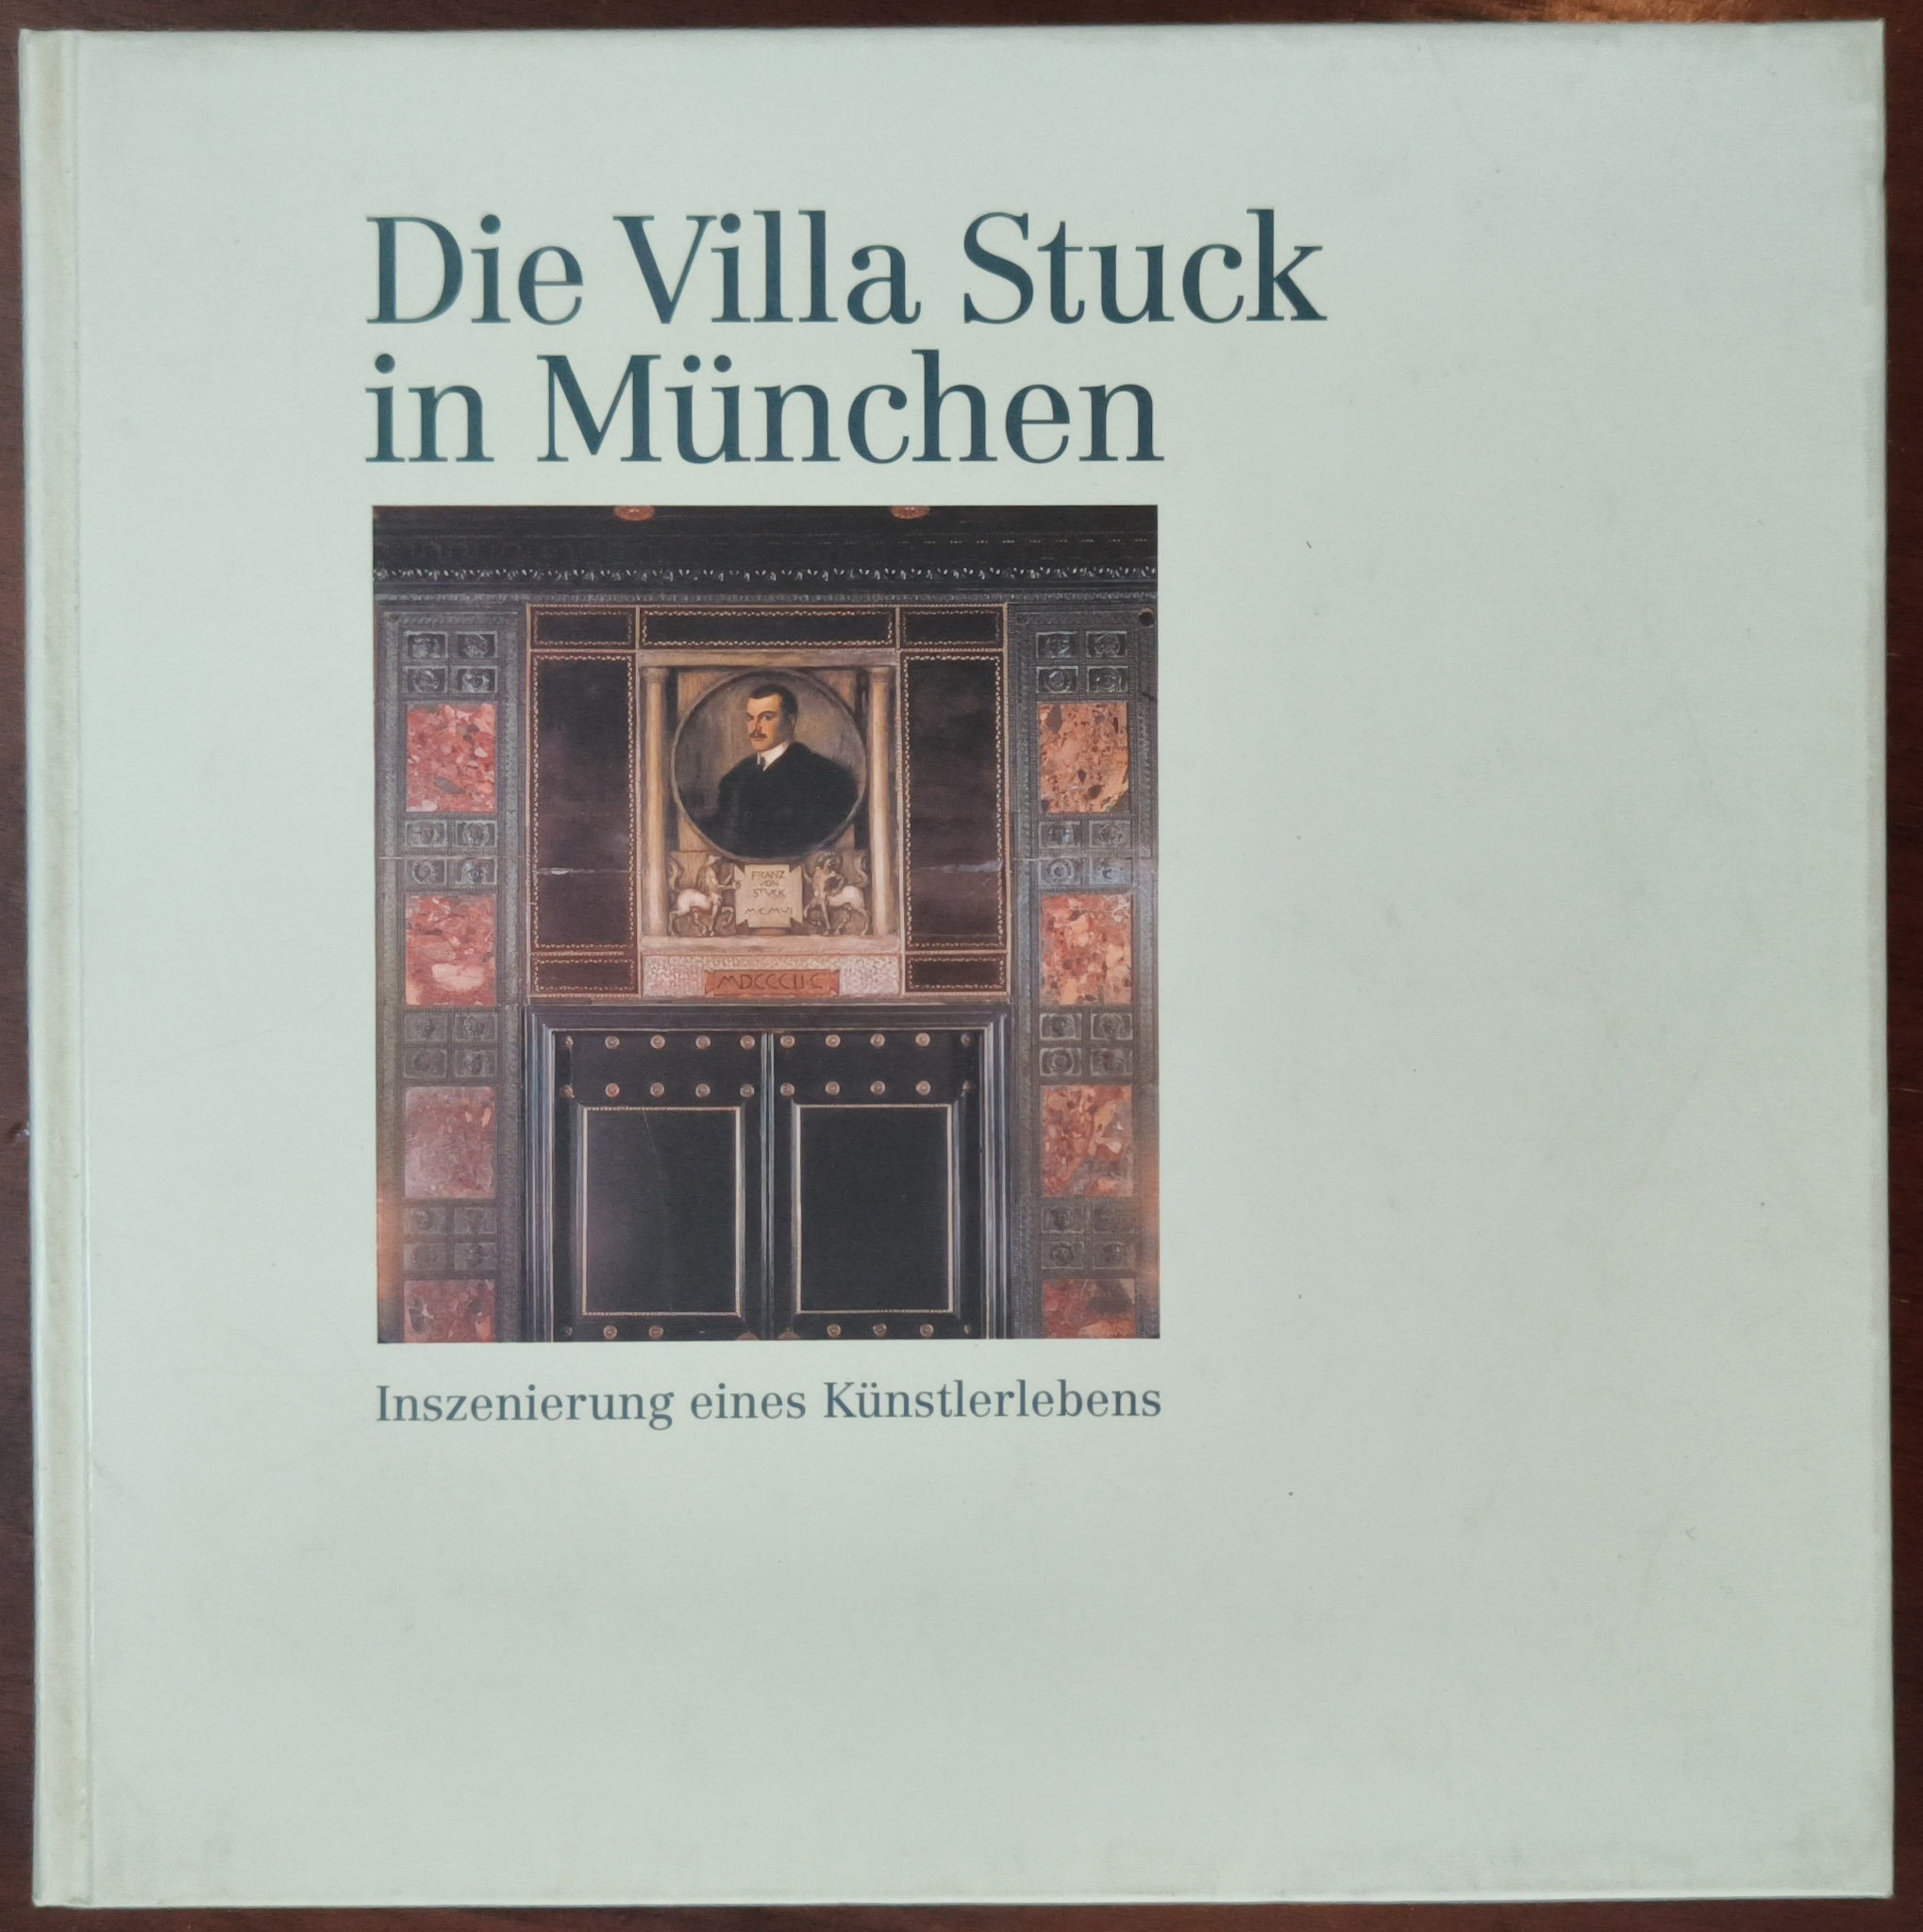 Die Villa Stuck in München. Inszenierung eines Künstlerlebens